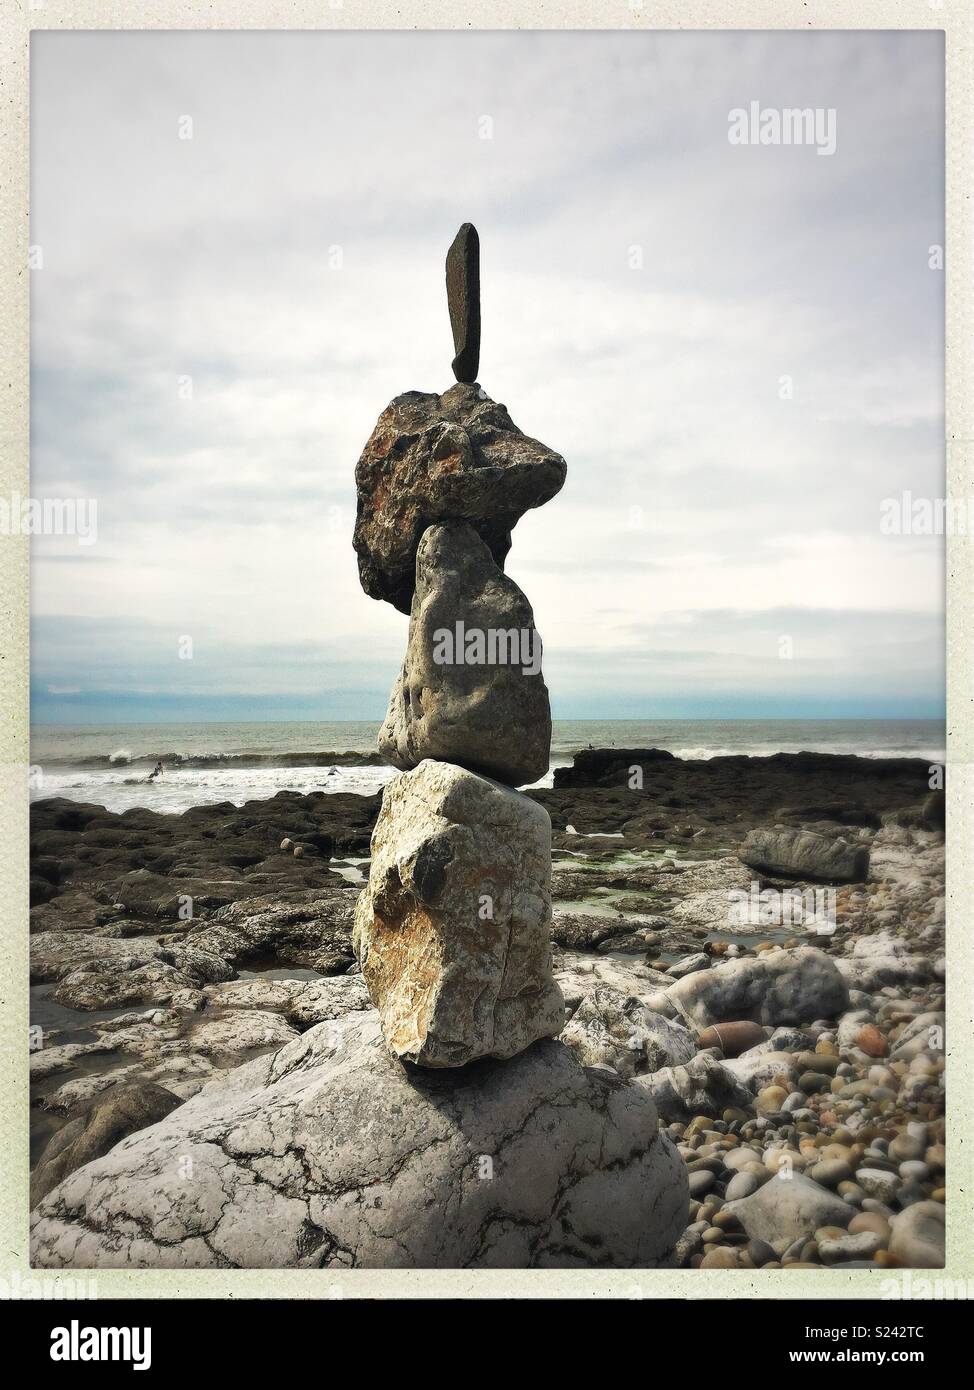 La pierre naturelle/rock sculpture d'équilibrage sur la plage avec des vagues. Banque D'Images